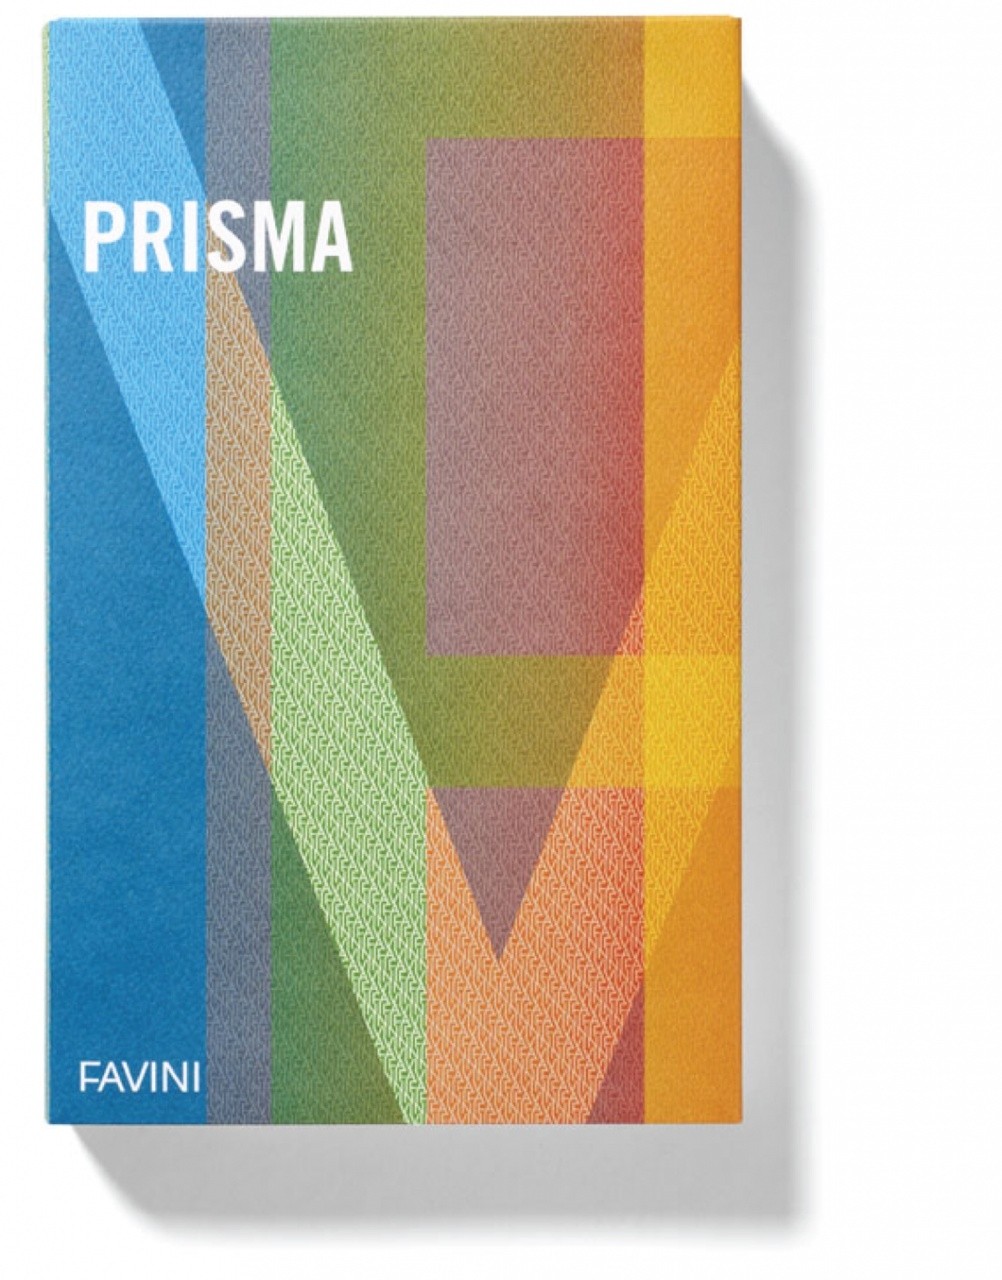 Favini Prismacolor 220 cartone 20 fogli 220 g/m²